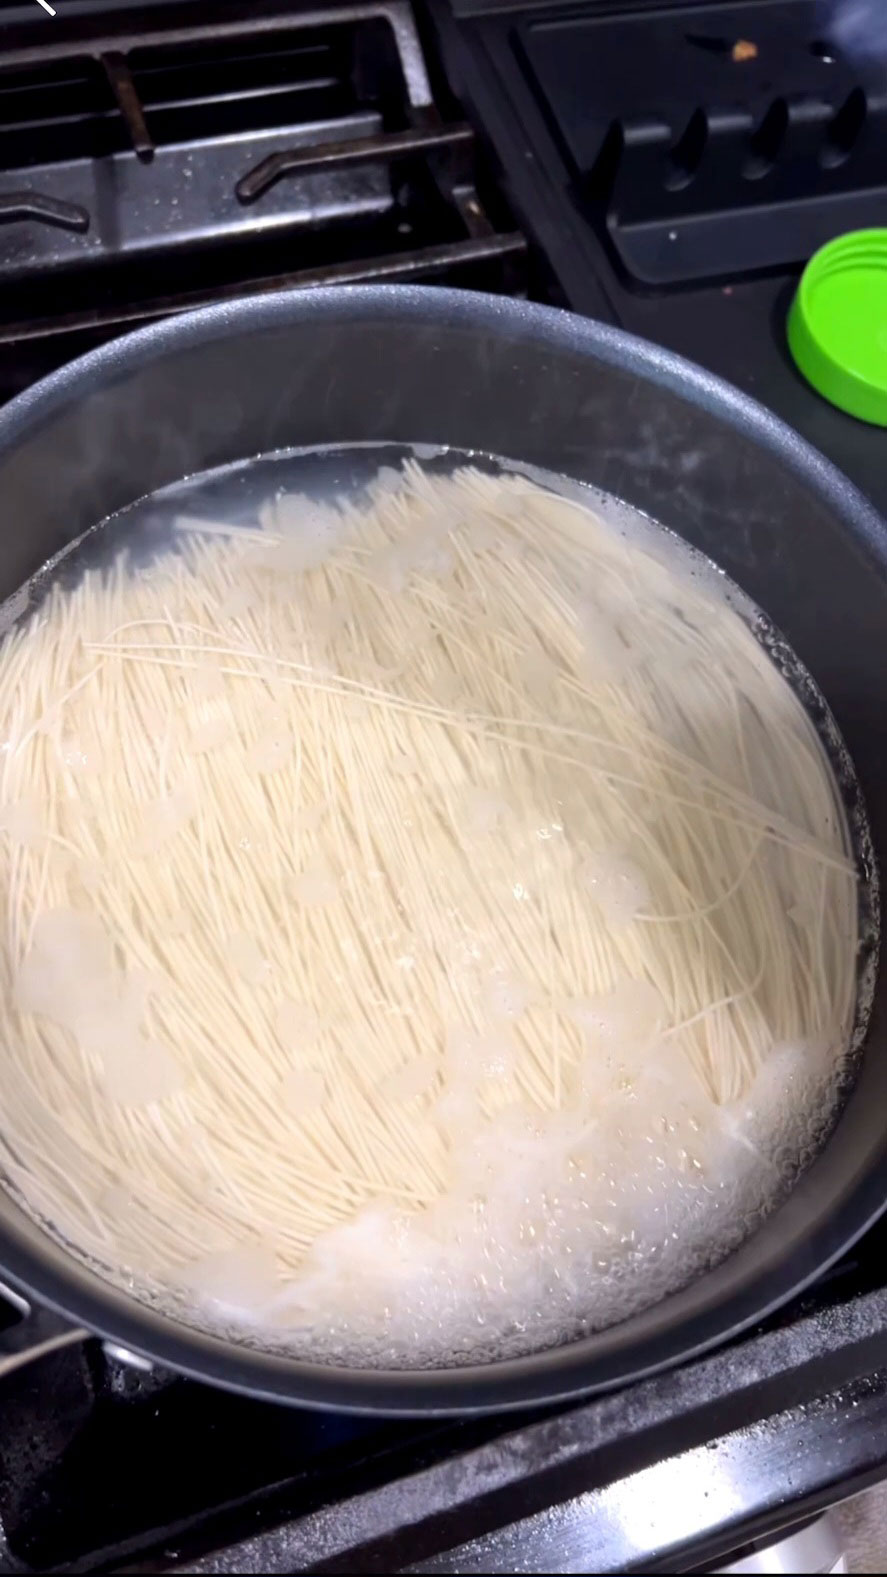 Boil the noodles 